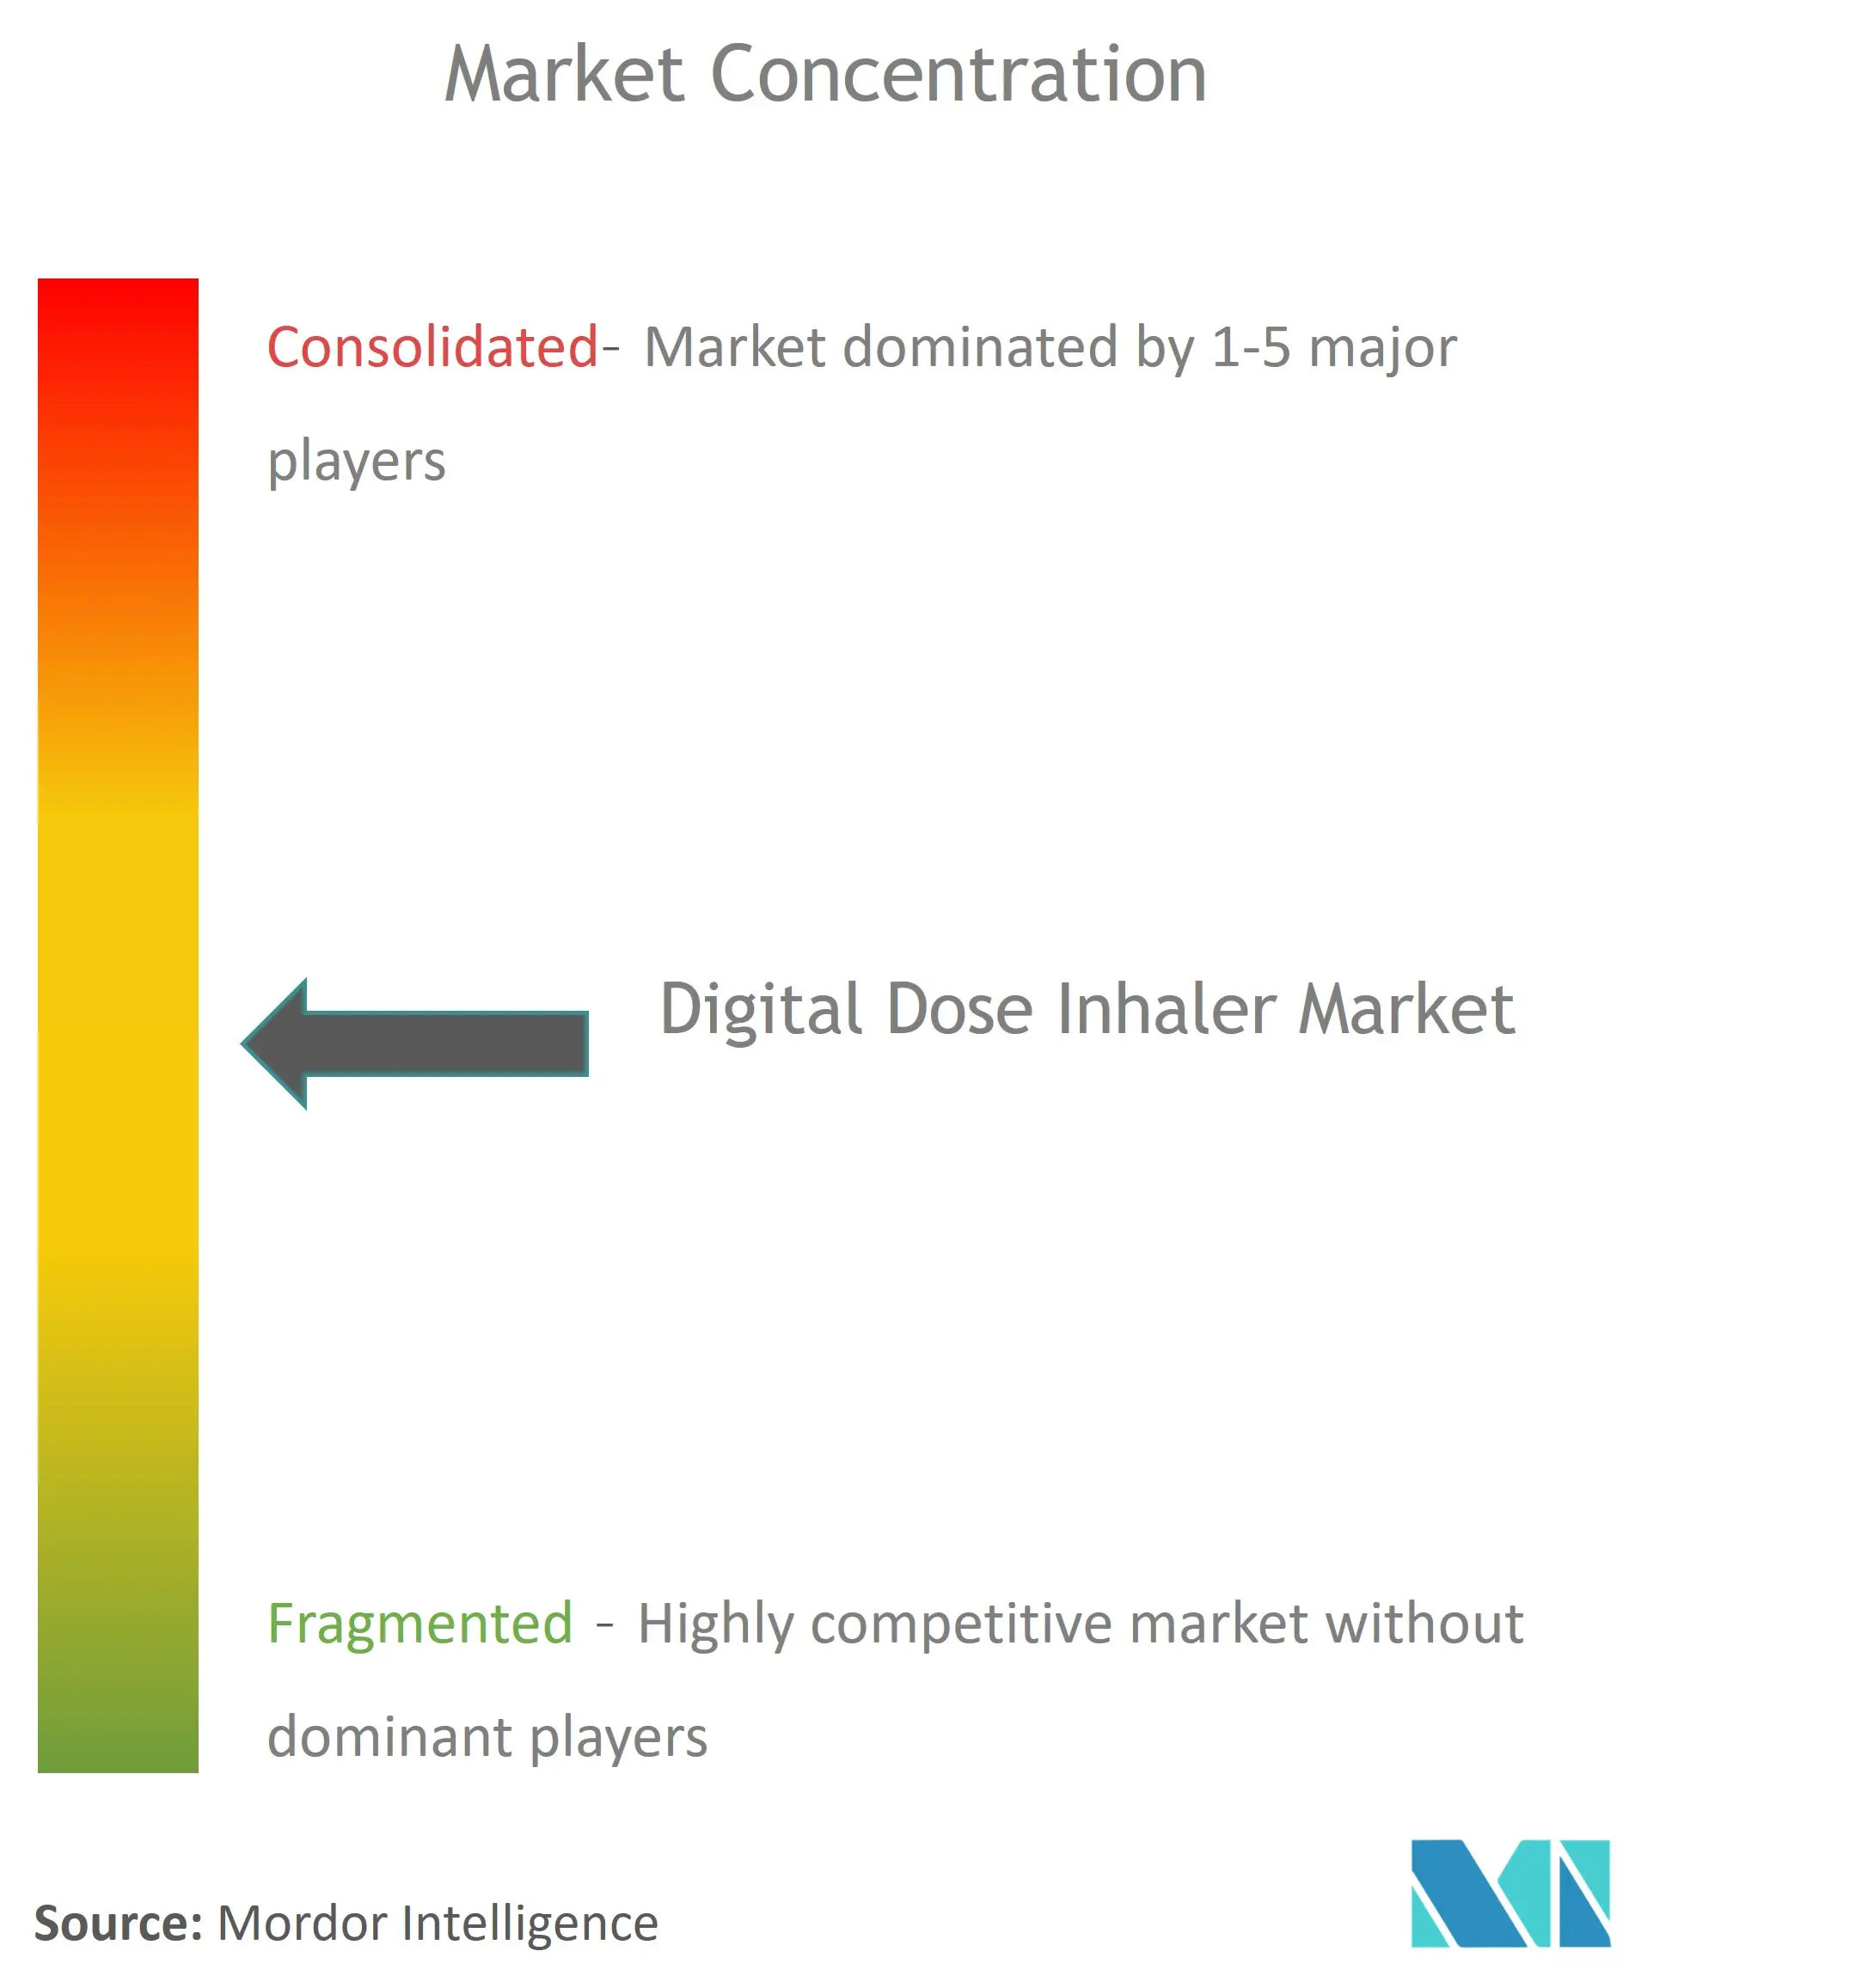 Global Digital Dose Inhaler Market Concentration